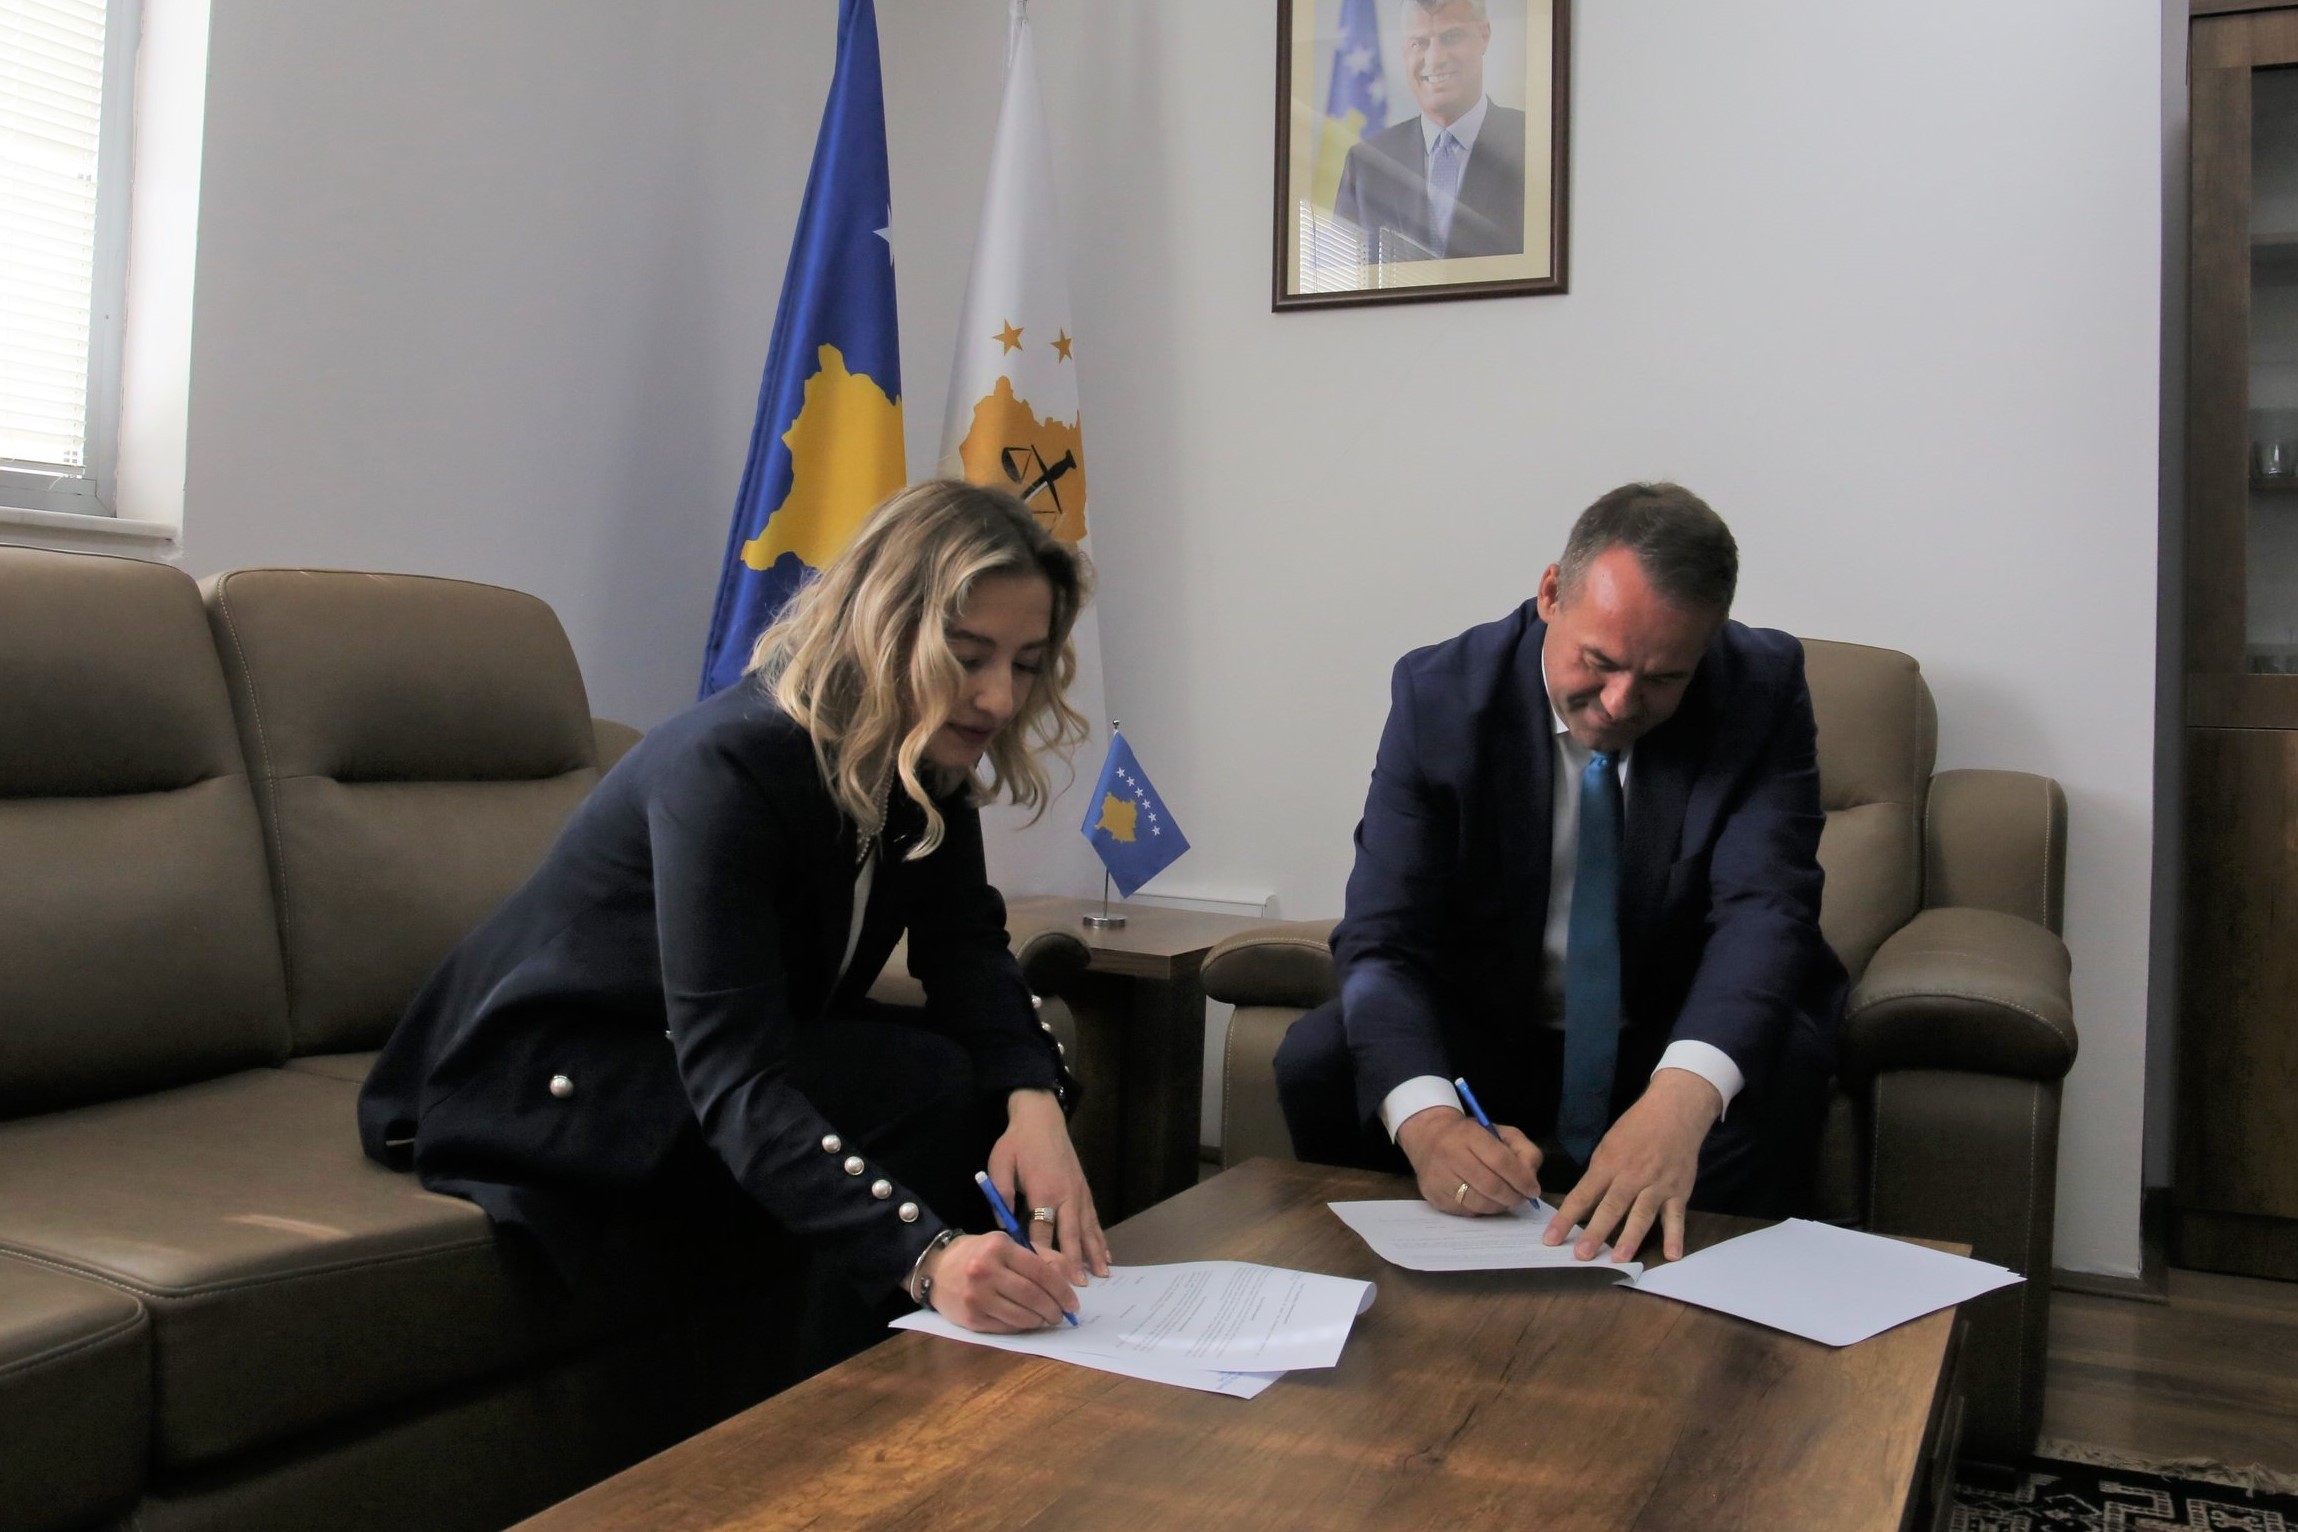 KPK dhe GLPS nënshkruan memorandum të bashkëpunimit 